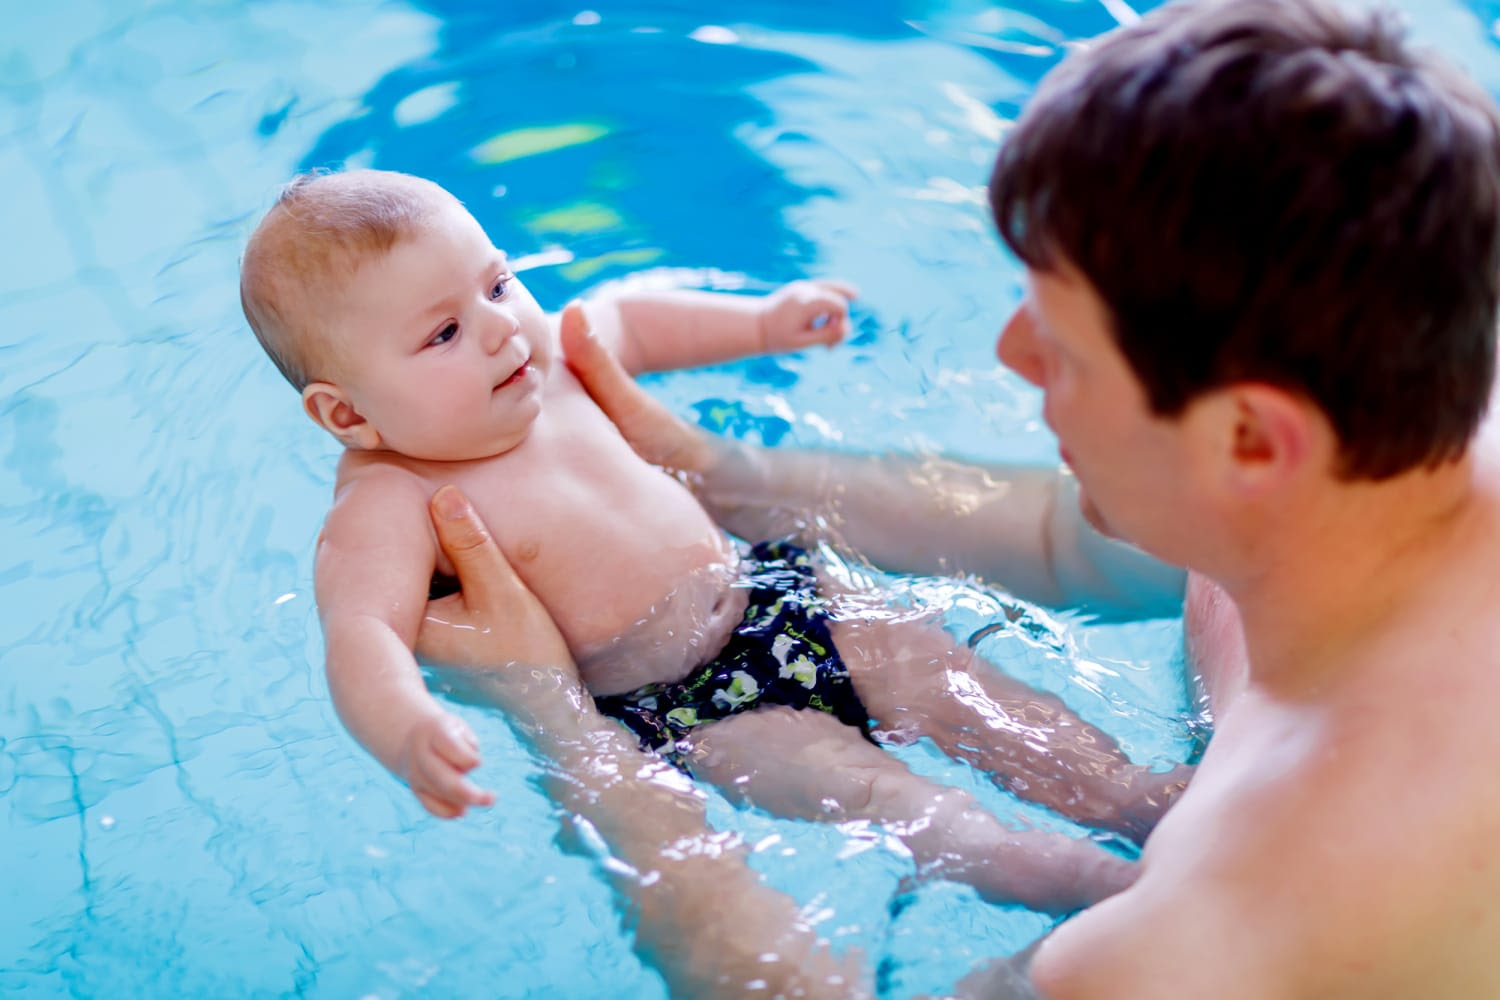 Γεια σου ρε Today! Baby-learn-to-swim-mc-230428-b49ca1